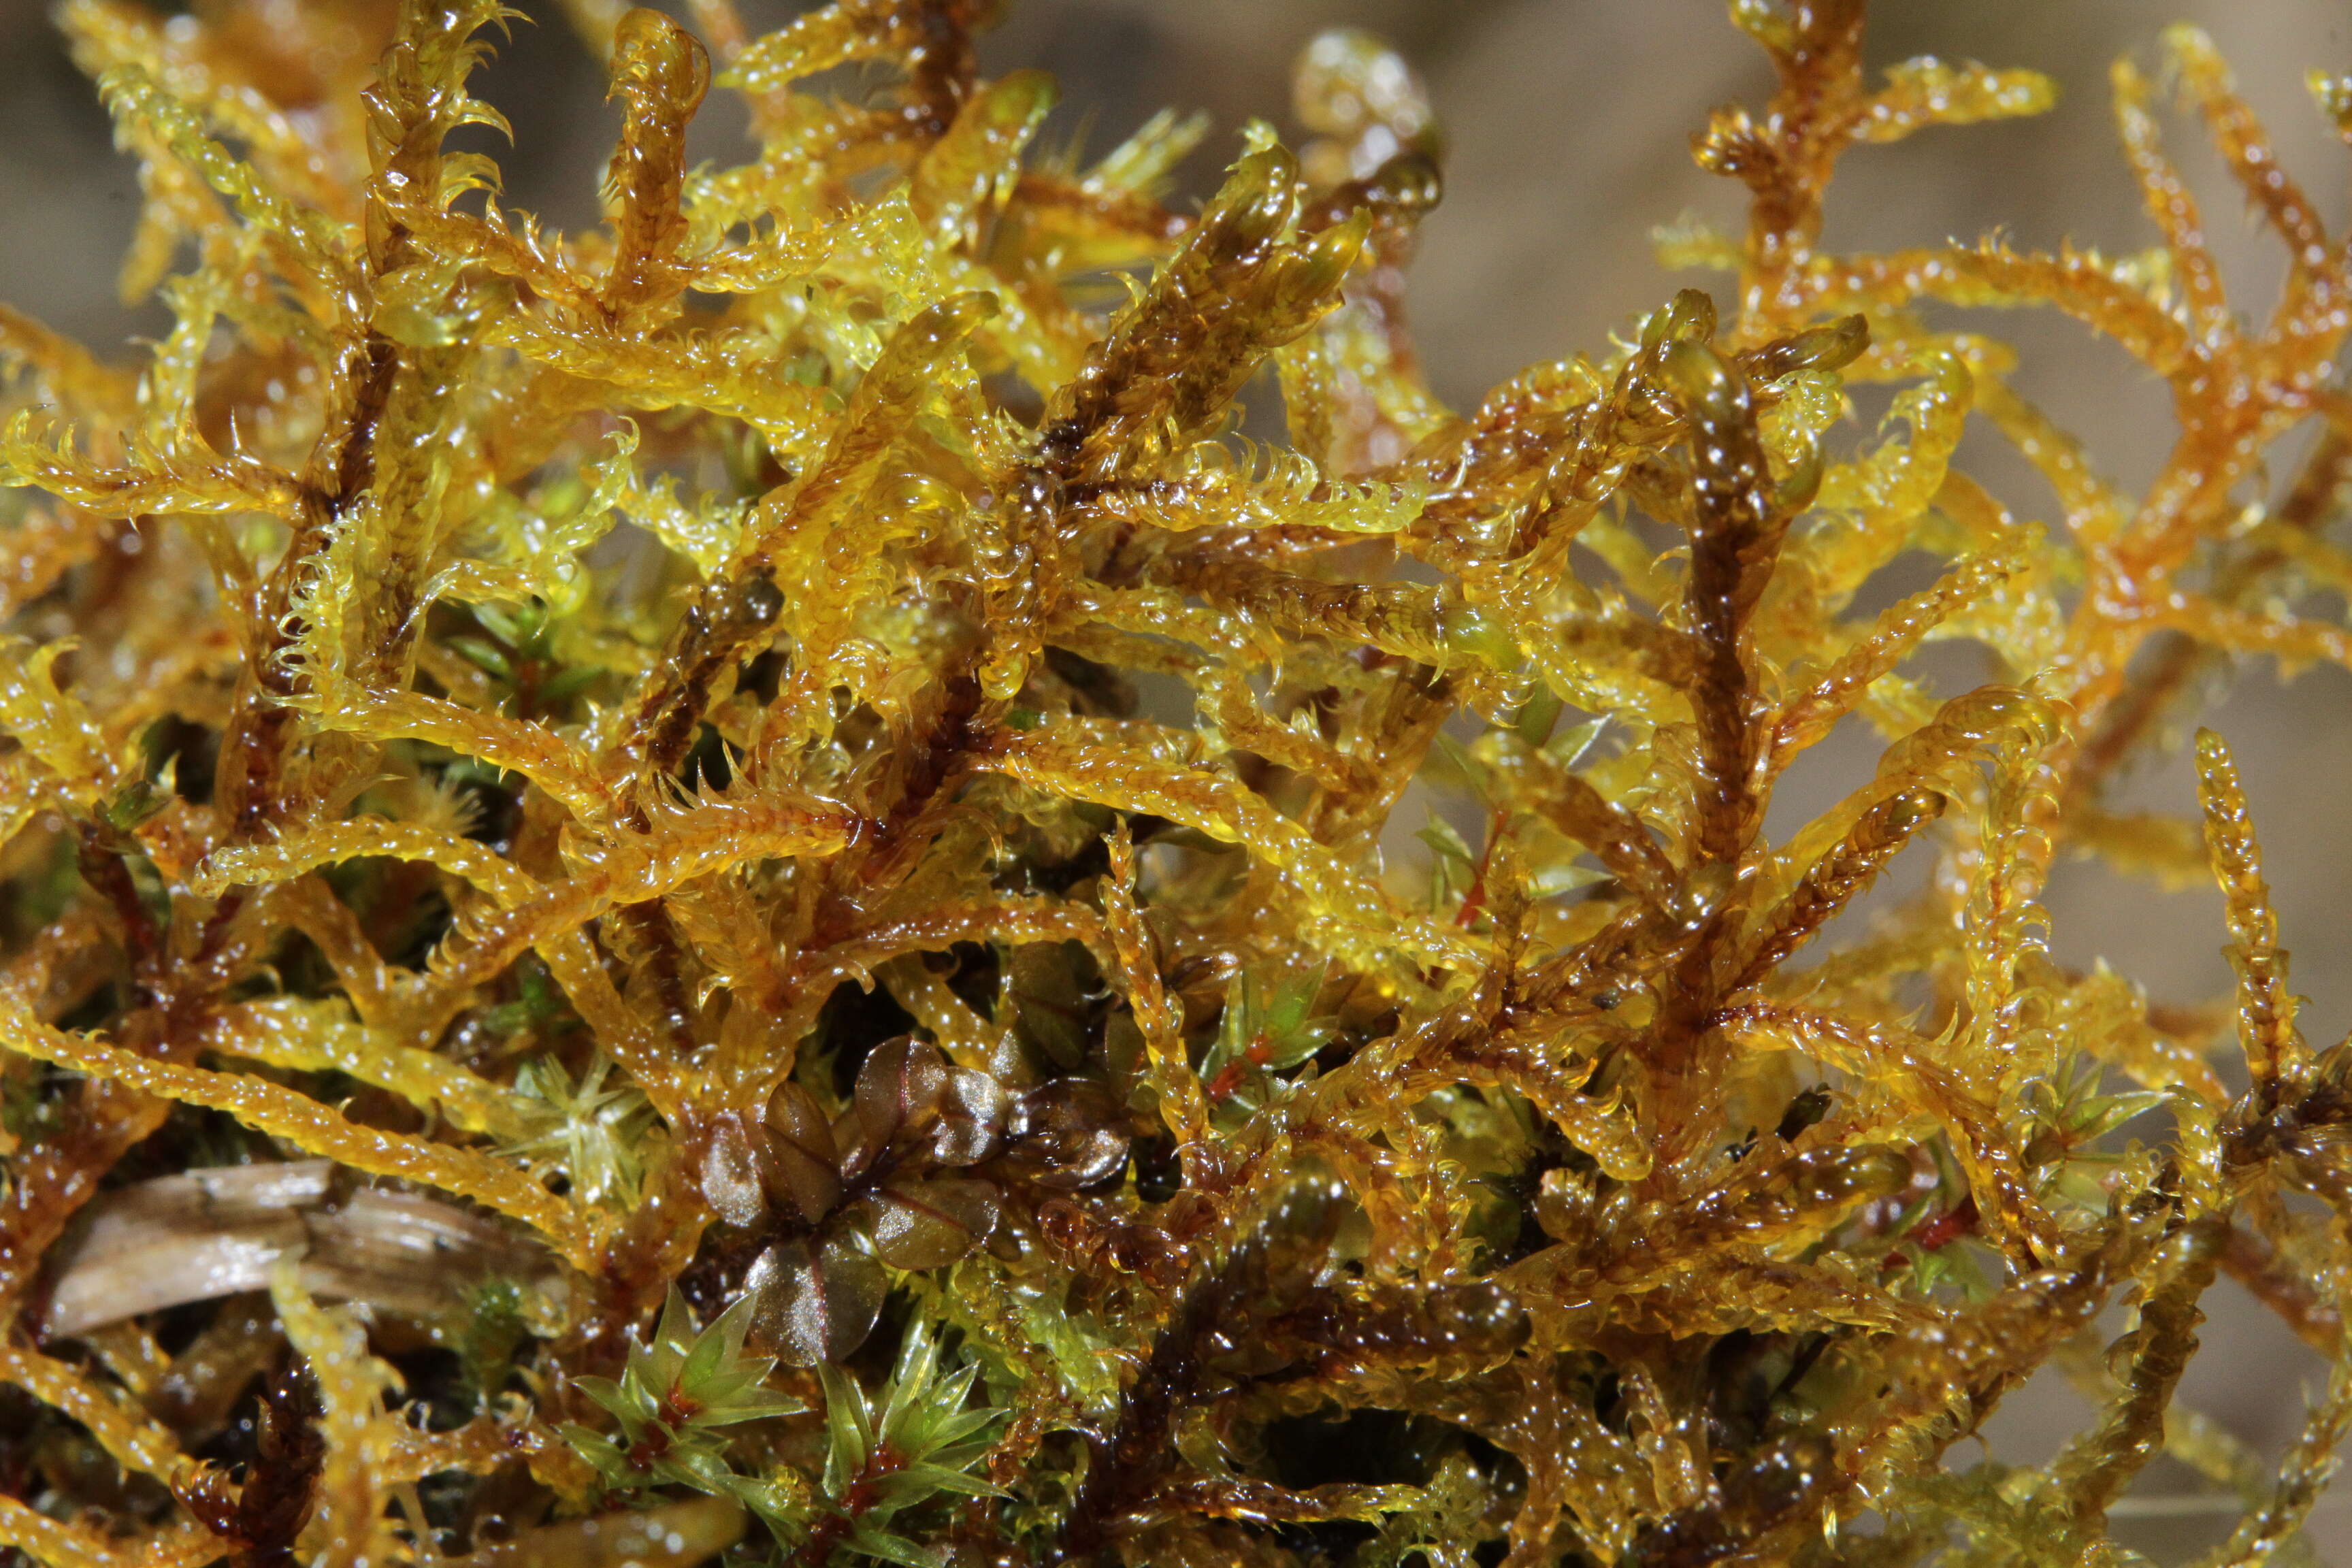 Image of hamatocaulis moss